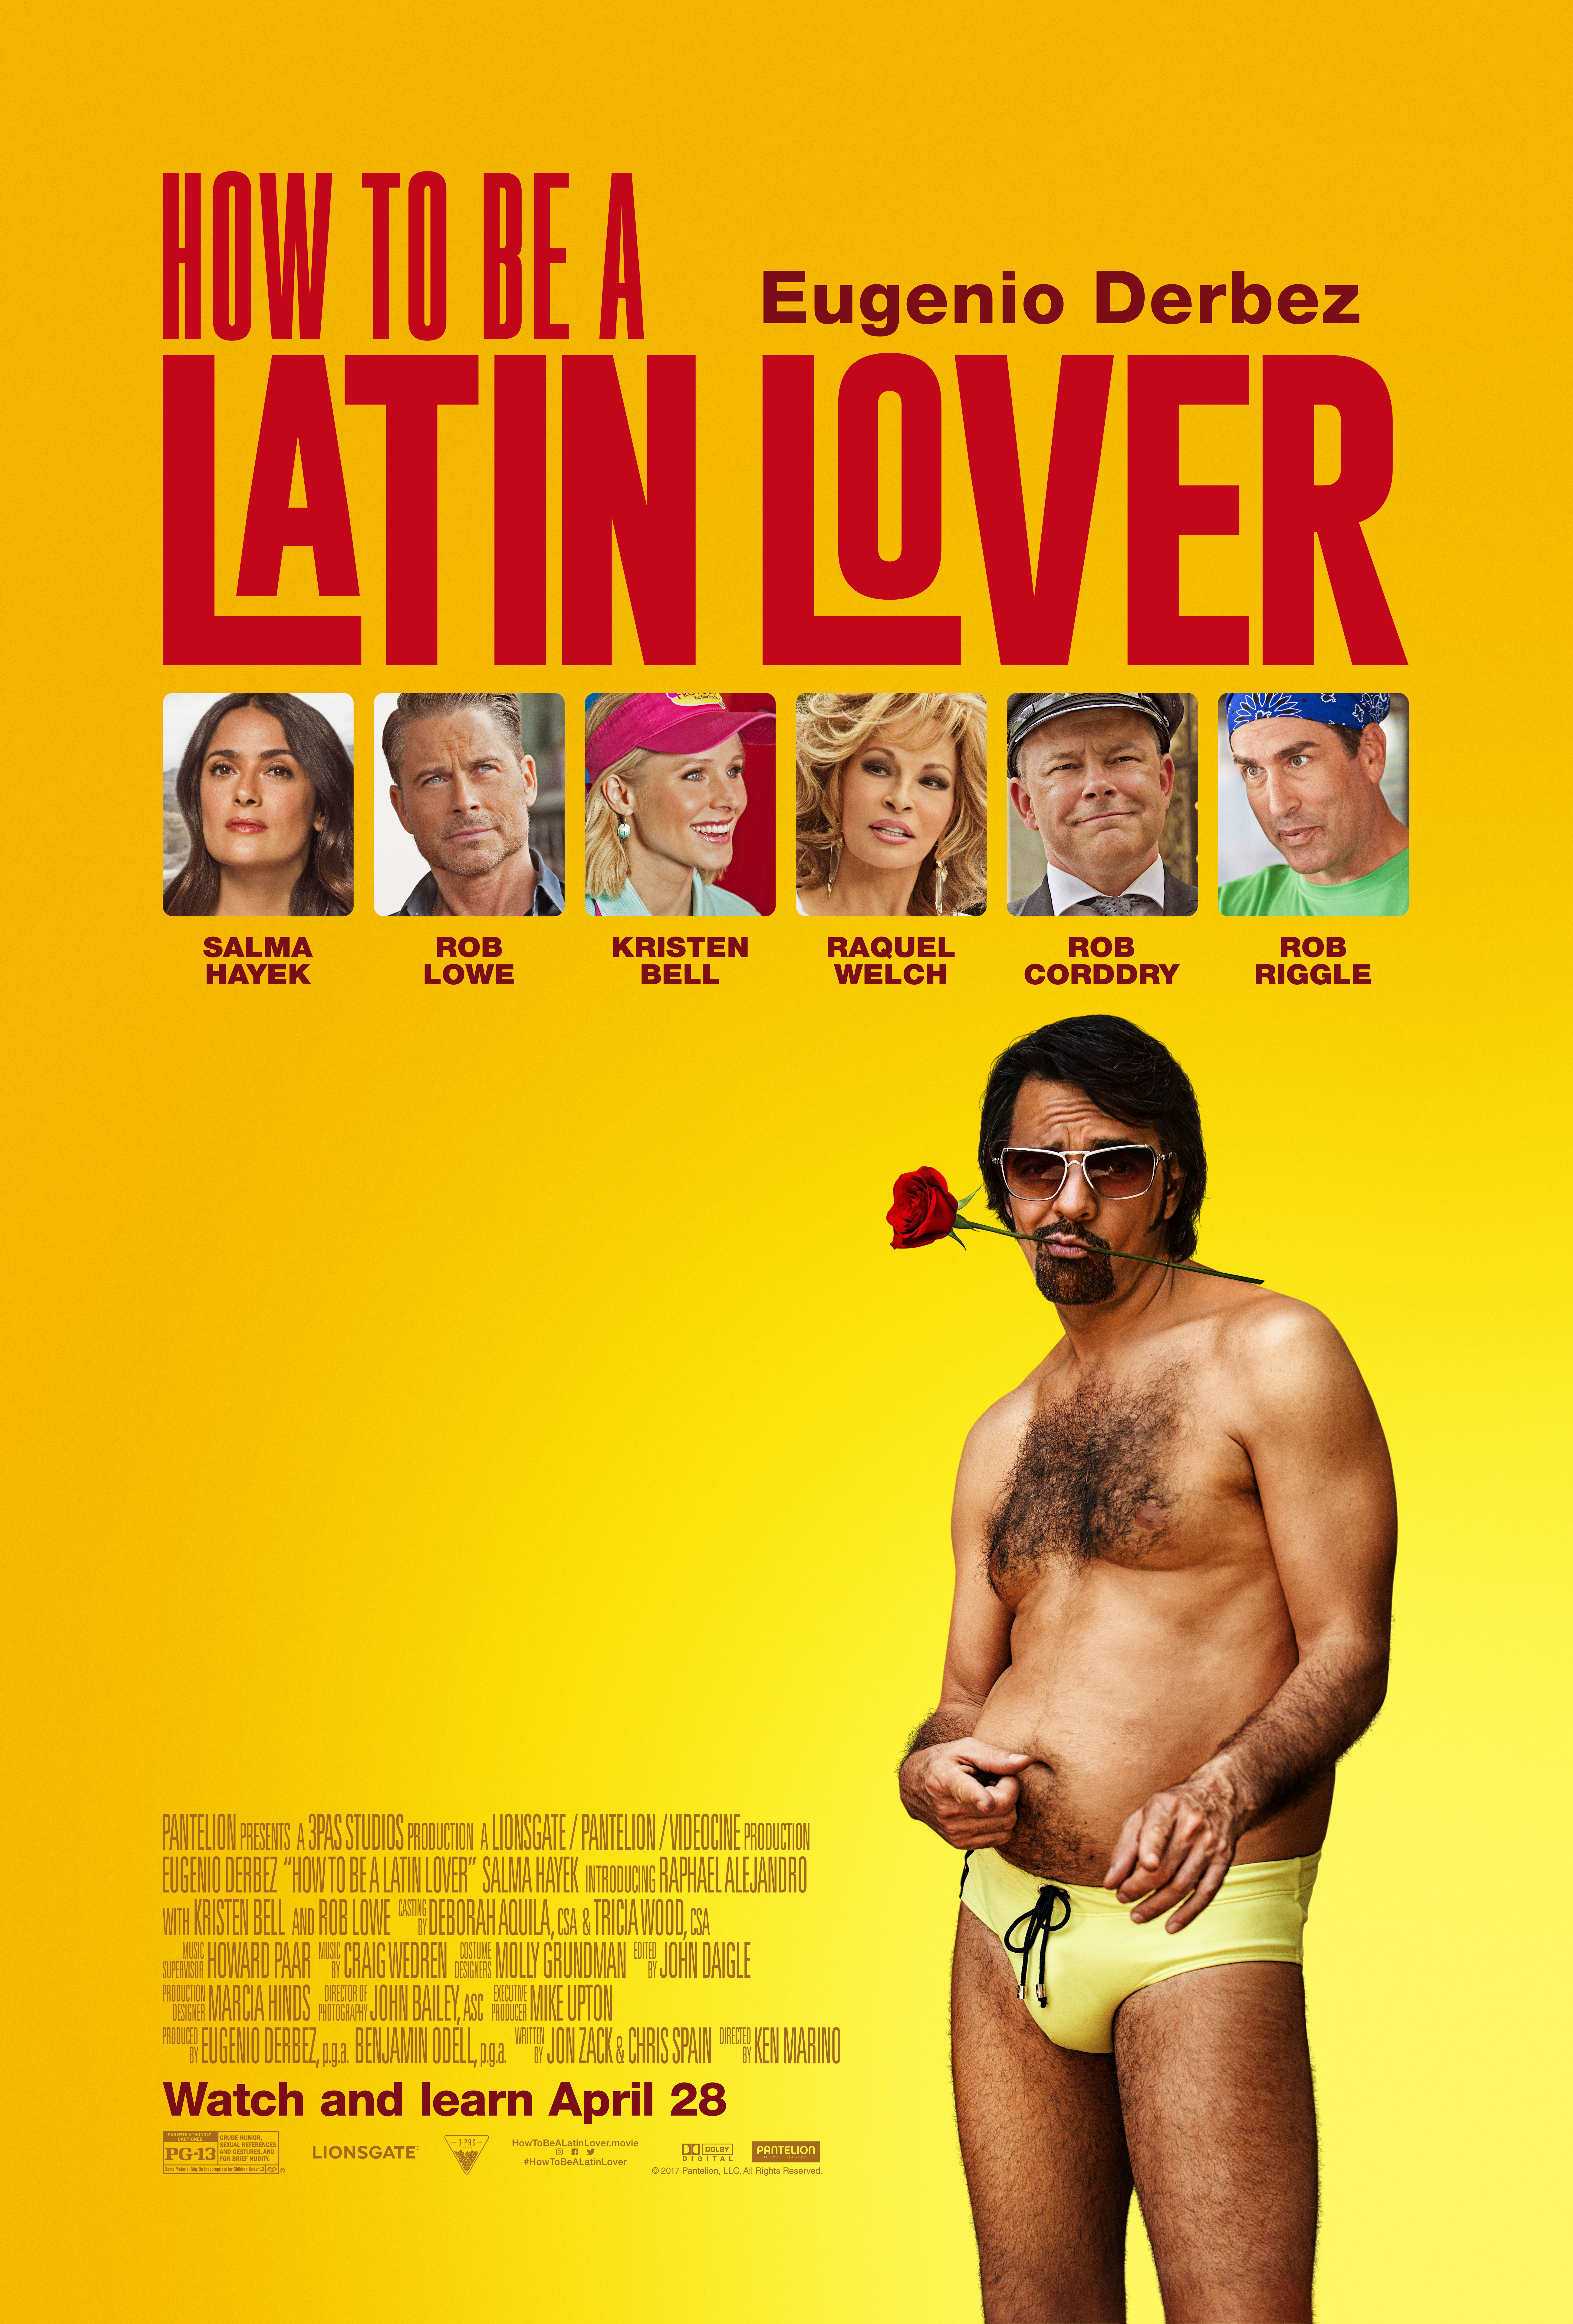 Cartel de "How to be a Latin Lover" en EEUU.